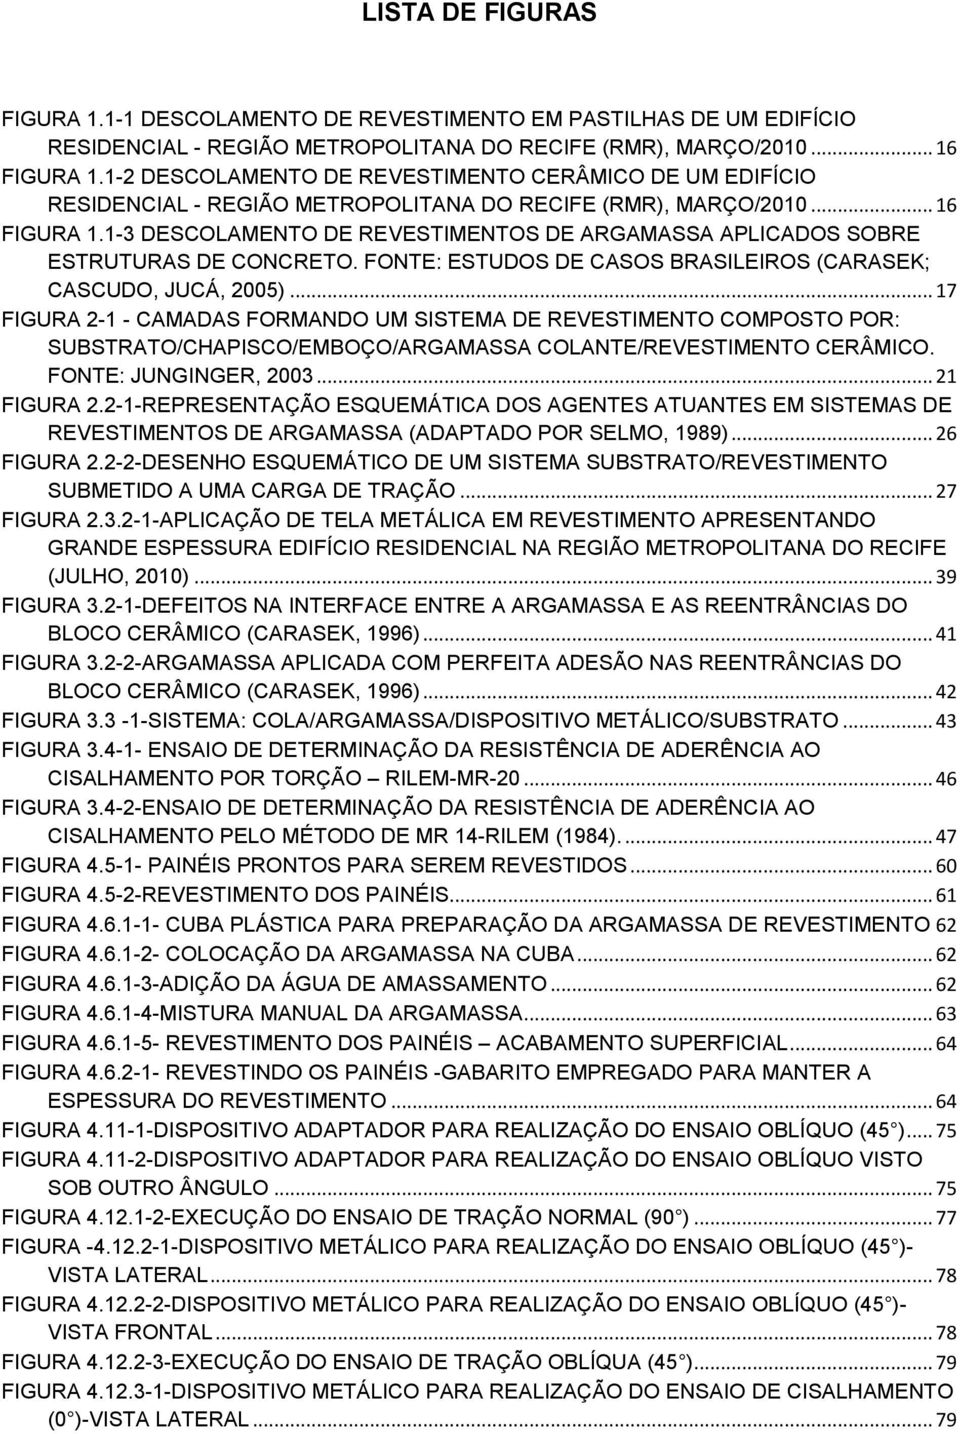 1-3 DESCOLAMENTO DE REVESTIMENTOS DE ARGAMASSA APLICADOS SOBRE ESTRUTURAS DE CONCRETO. FONTE: ESTUDOS DE CASOS BRASILEIROS (CARASEK; CASCUDO, JUCÁ, 2005).